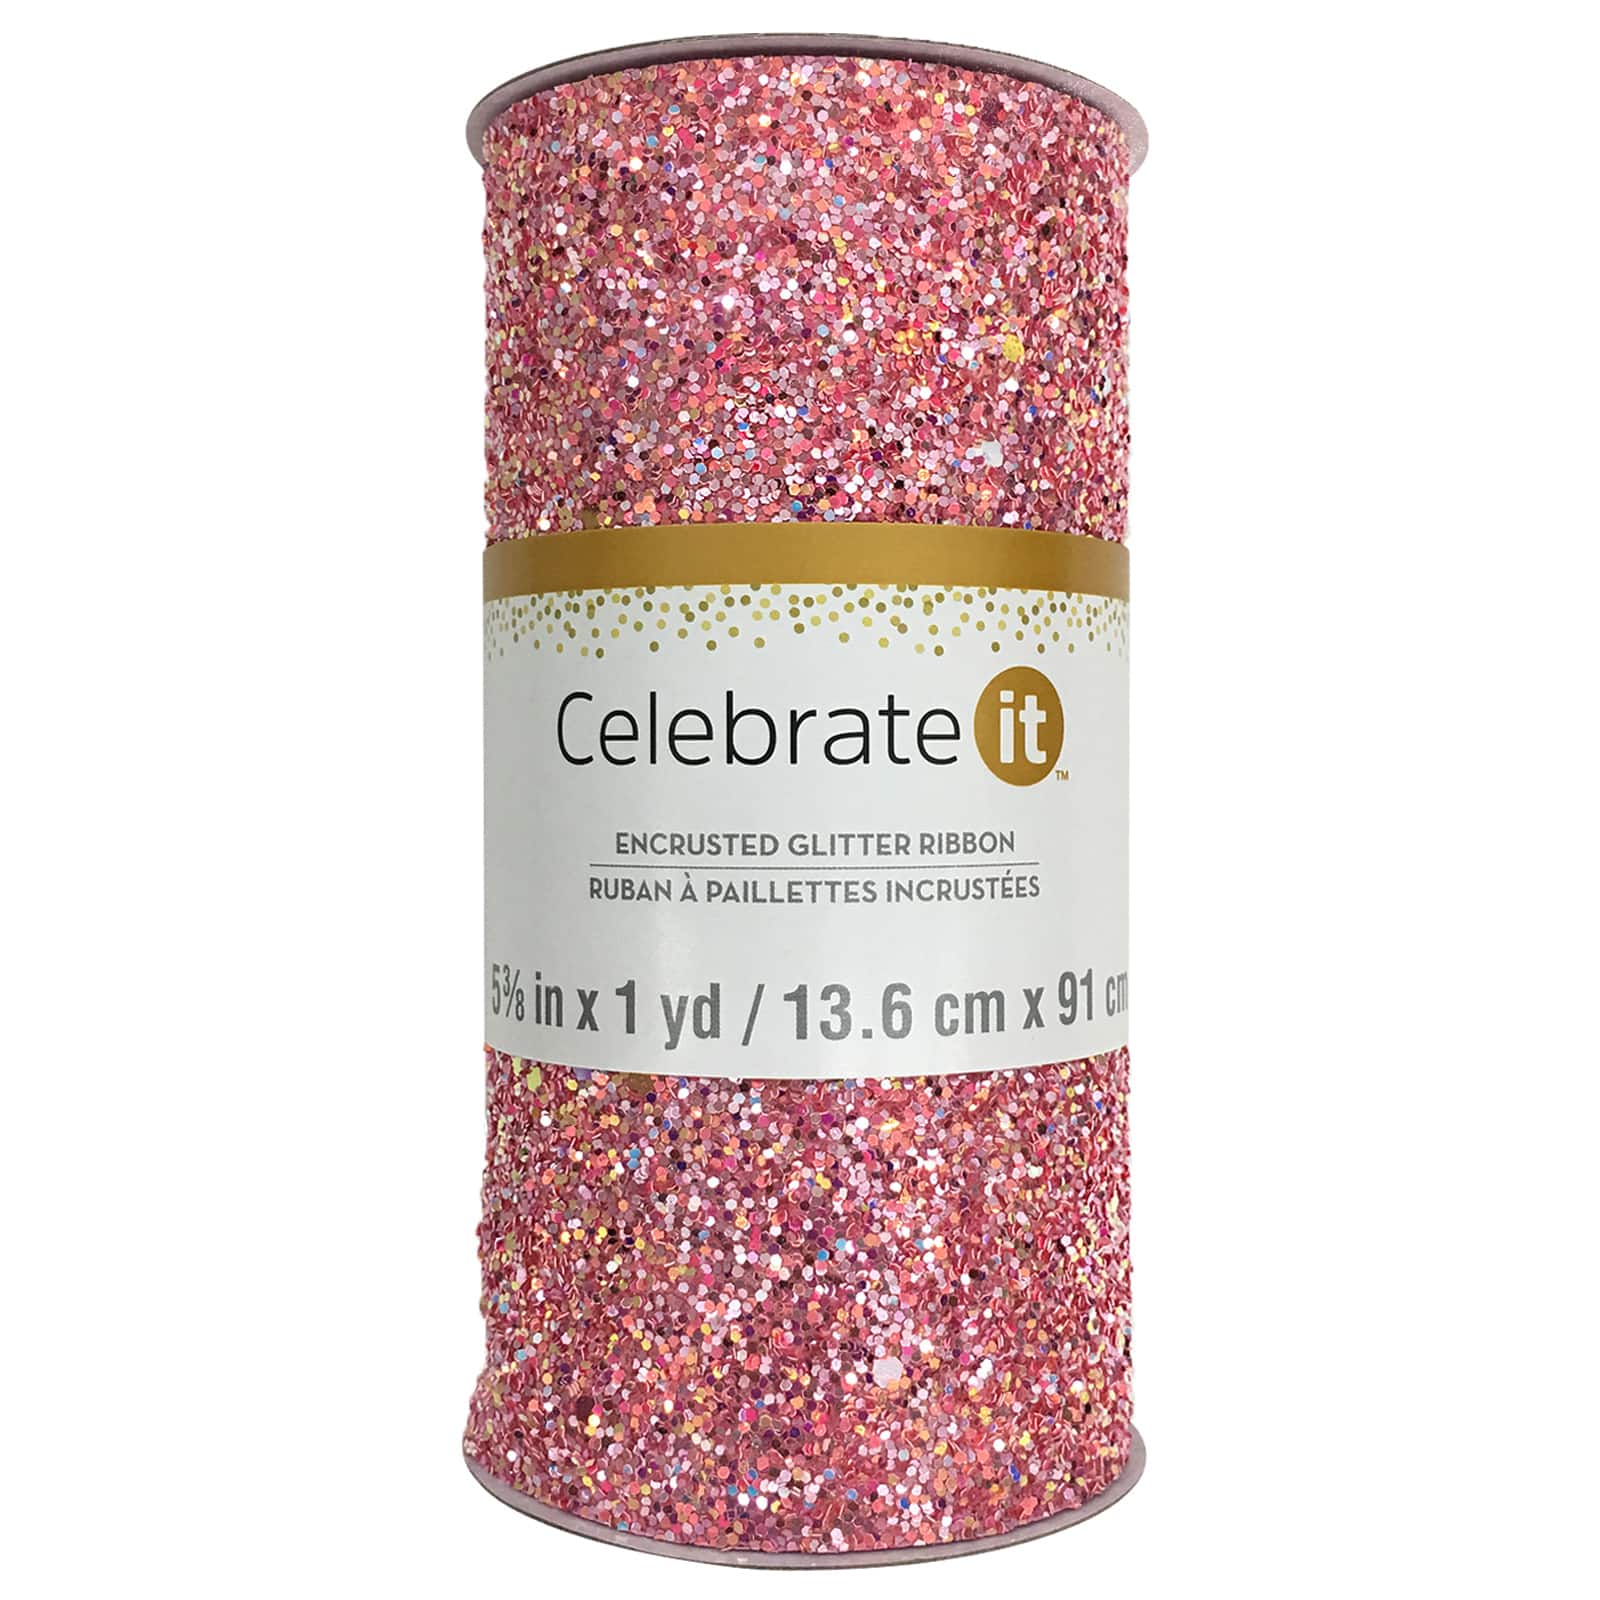 Atomisk til eksil folder 5.375" Encrusted Glitter Ribbon by Celebrate It® | Michaels